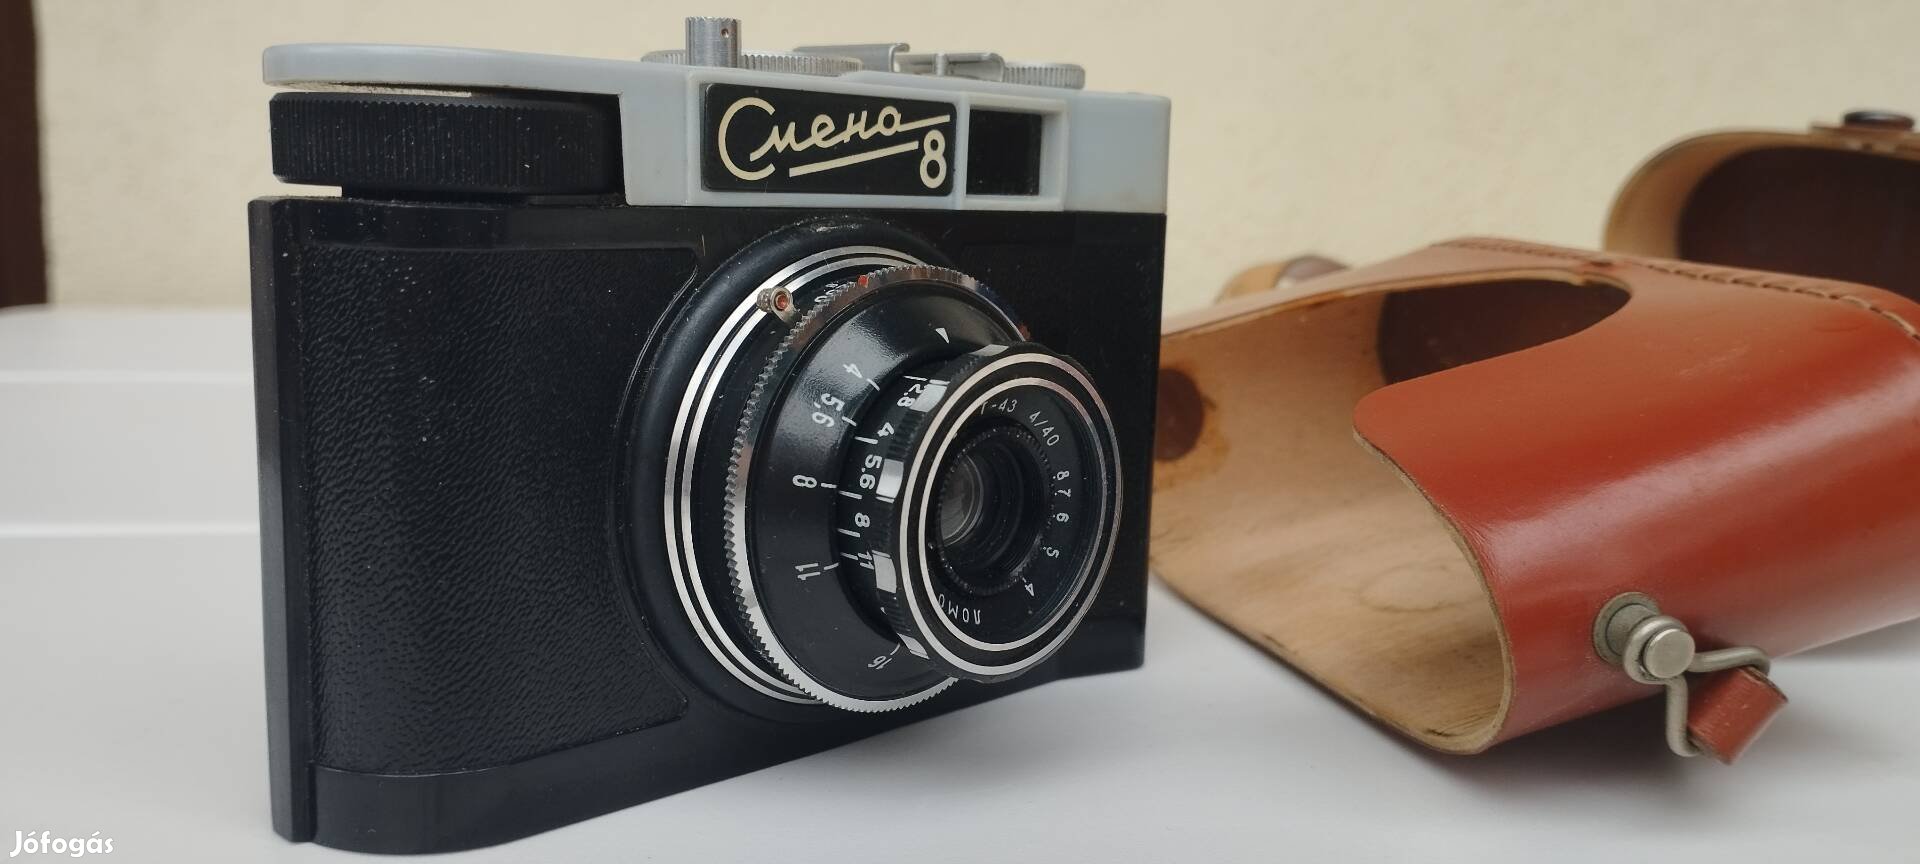 Retro régi fényképező gép fényképezőgép tokjában- Cmeha  